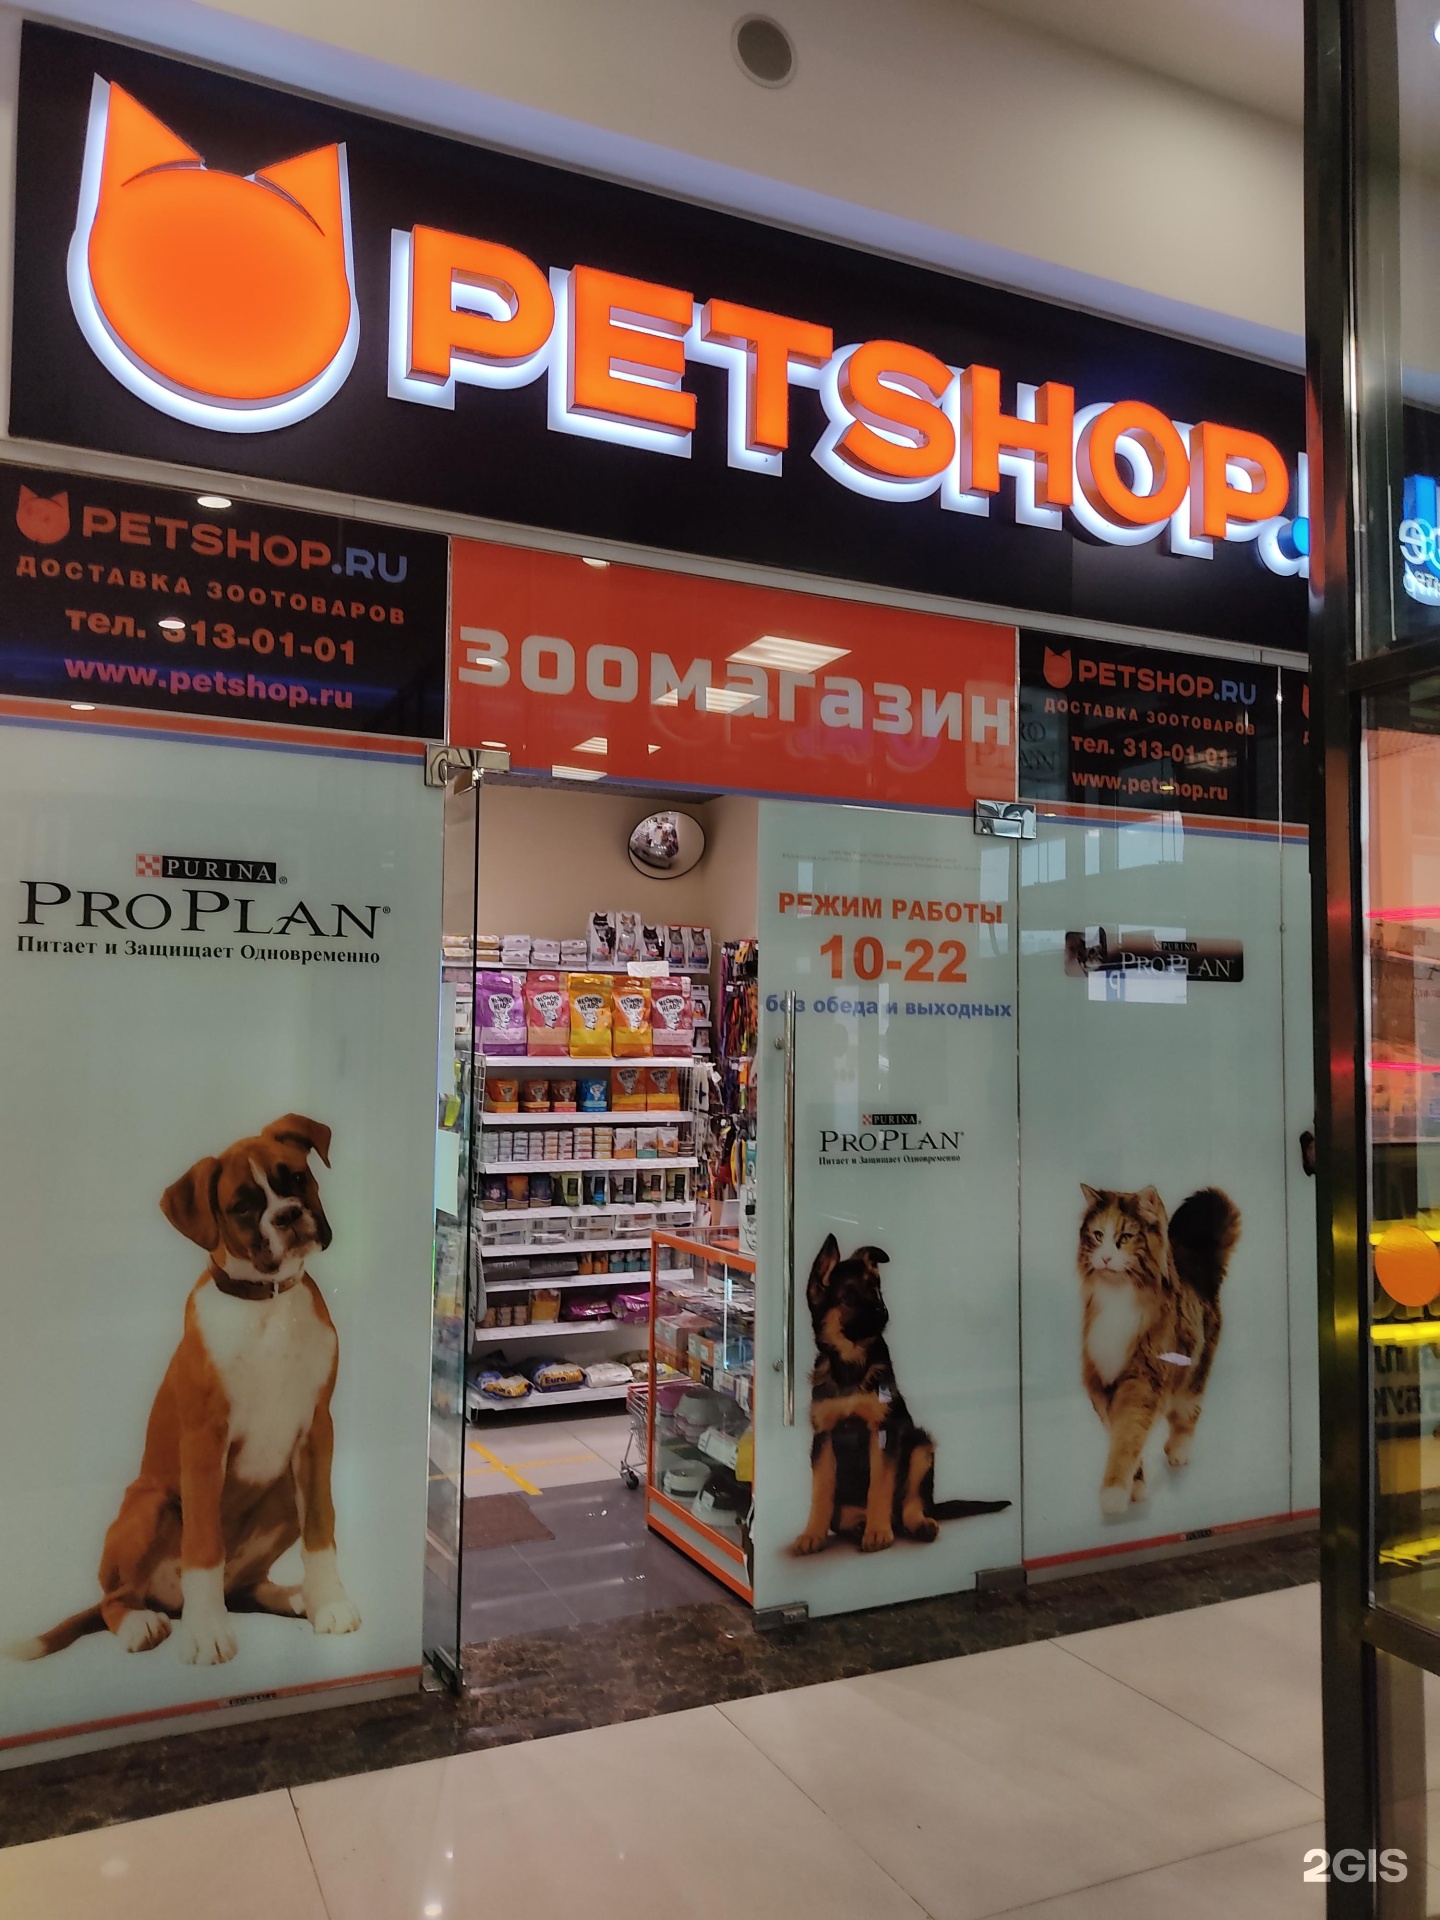 Интернет магазины для животных в спб. Зоомагазин с животными СПБ. Пенза Petshop. Владелец Pet shop. ПЕТШОП Орехово Зуево.